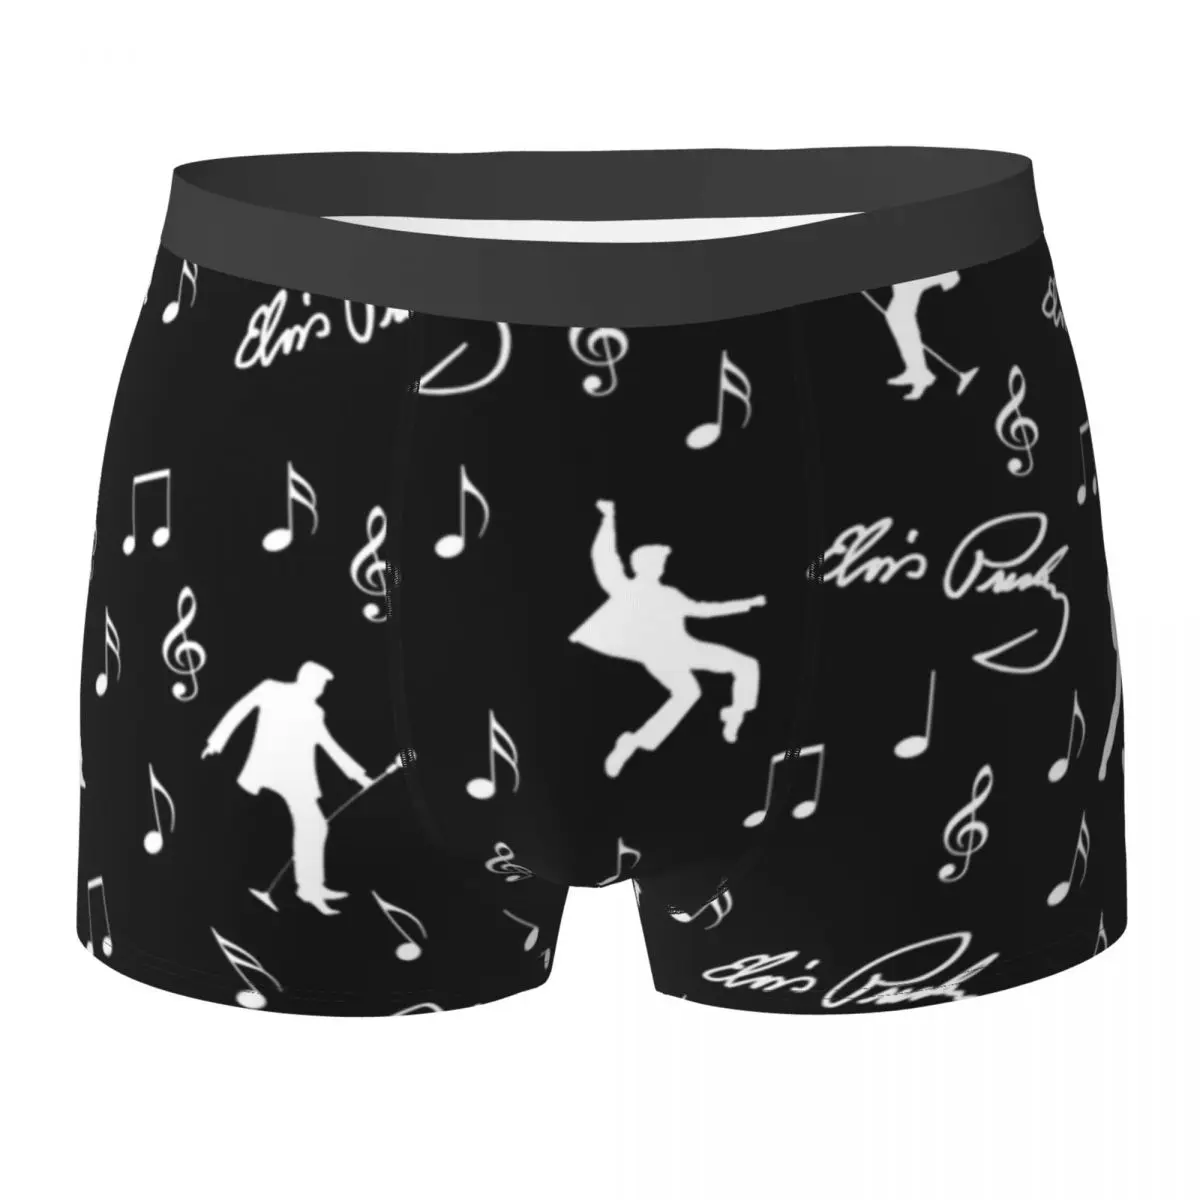 

Elvis Presley Underwear Music Pattern Printed Boxershorts Trenky Male Panties Comfortable Boxer Brief Gift Idea